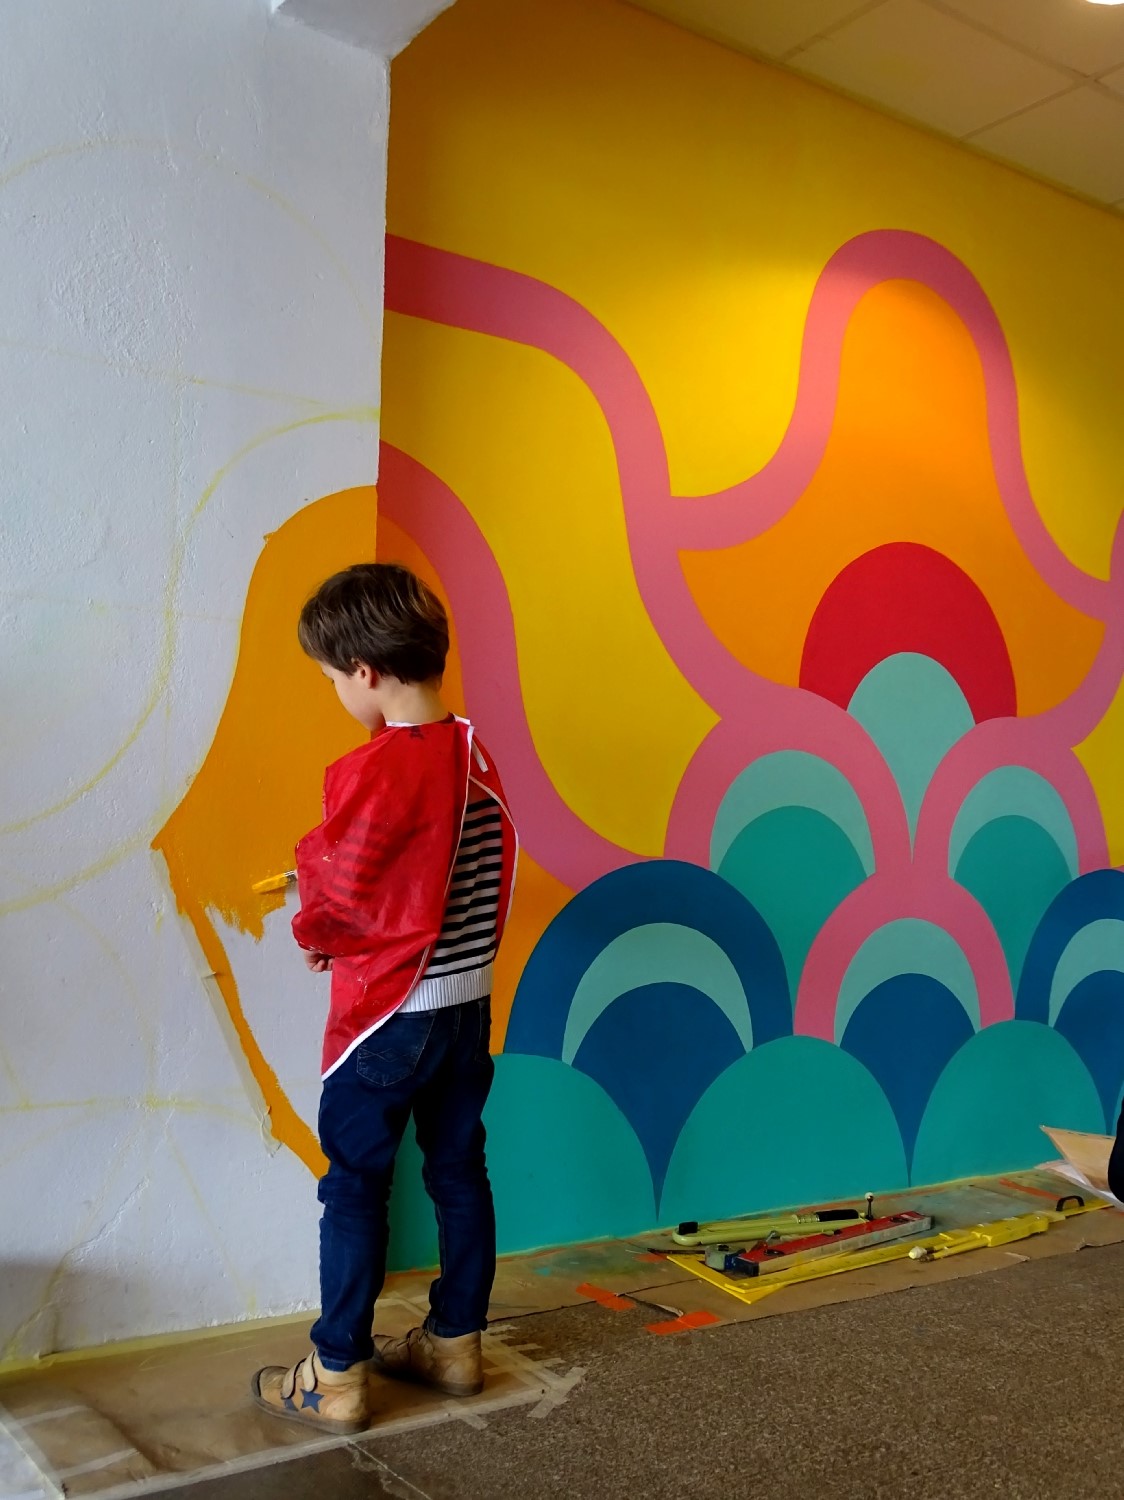 Réalisation de la peinture murale sous le préau de l'école du Moulin à Saint-Uniac. Photo : Marine Bouilloud